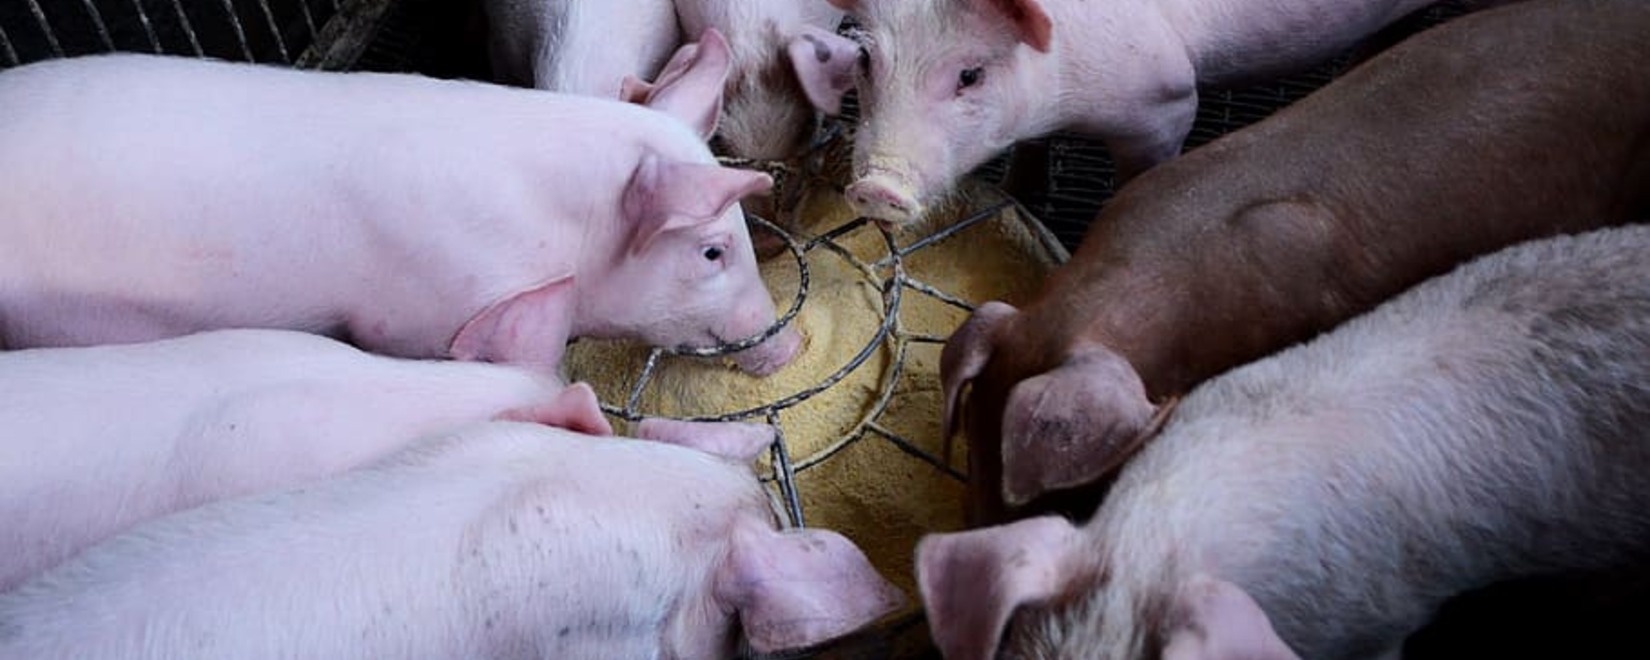 Три российские компании получили разрешение на экспорт свинины в Китай, начало поставок уже в марте